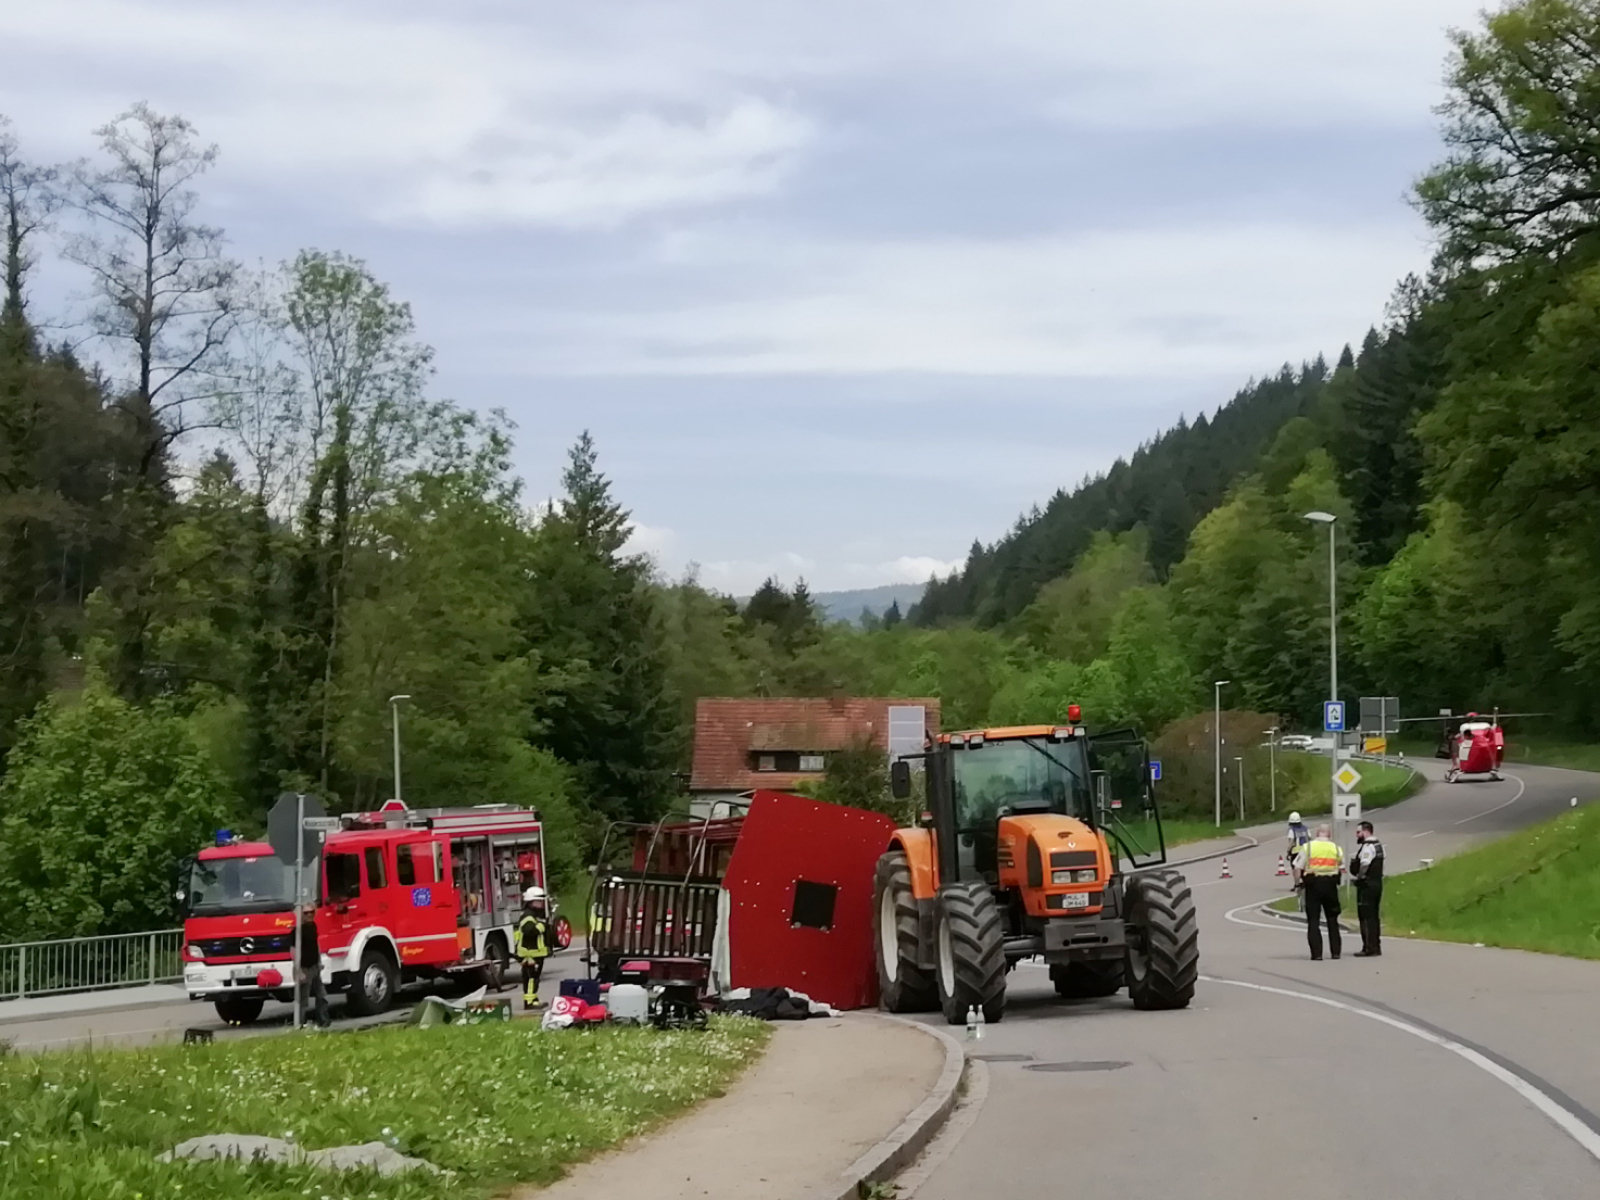 29 verletzte nach maiwagen-unfall in deutschland